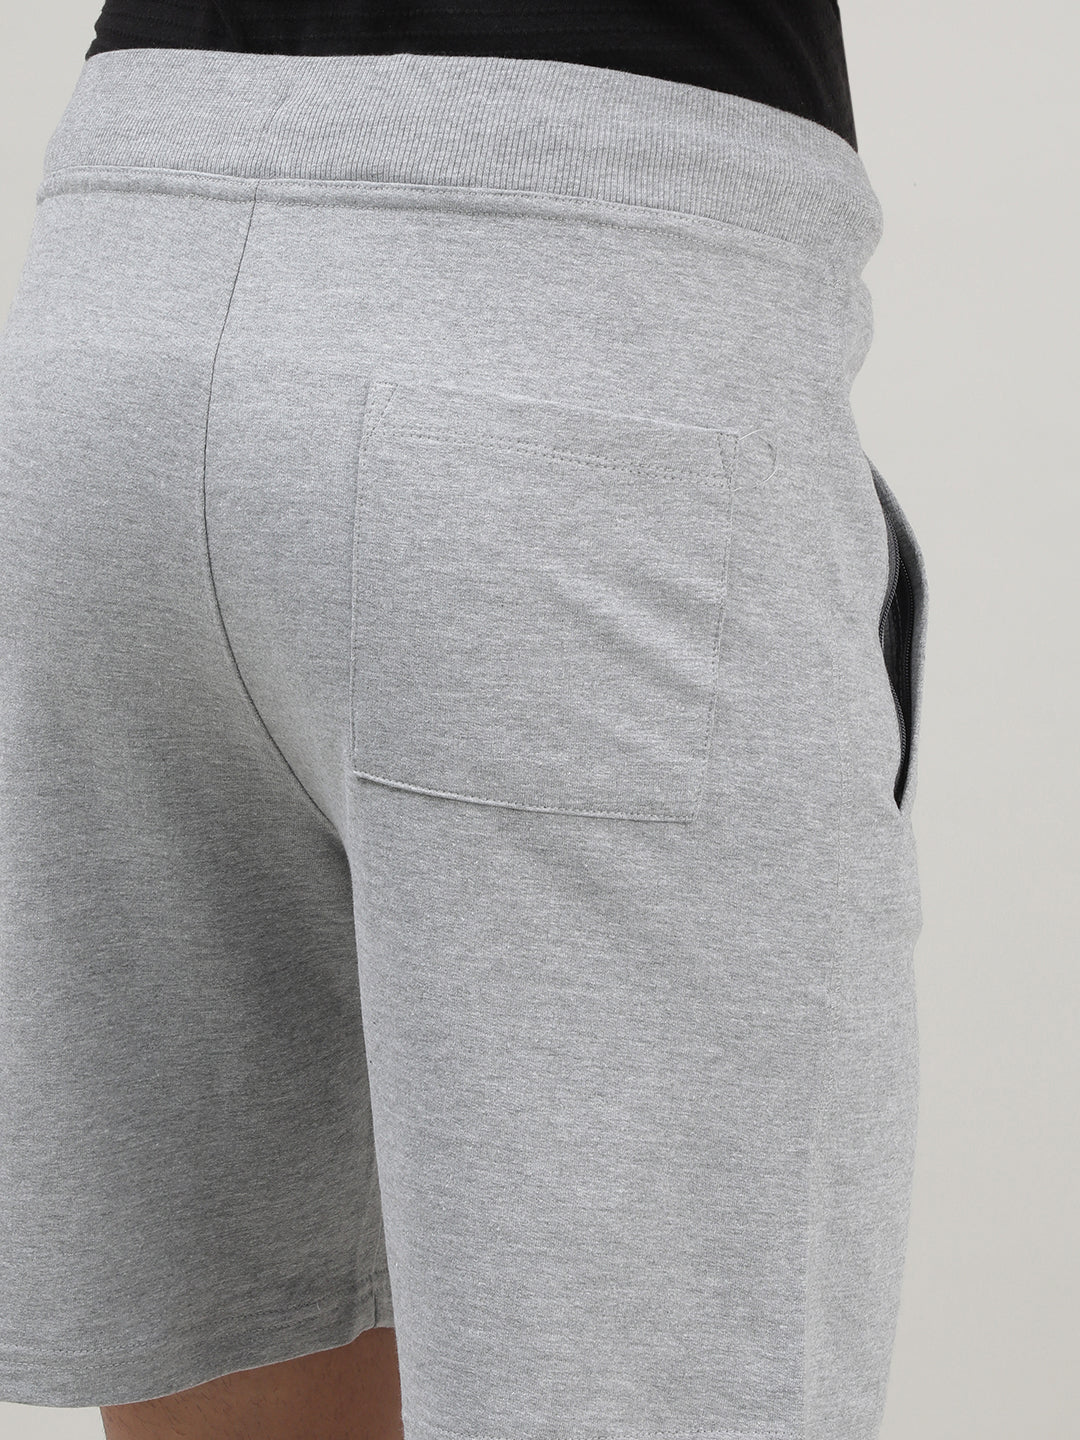 Light Grey Shorts for Men